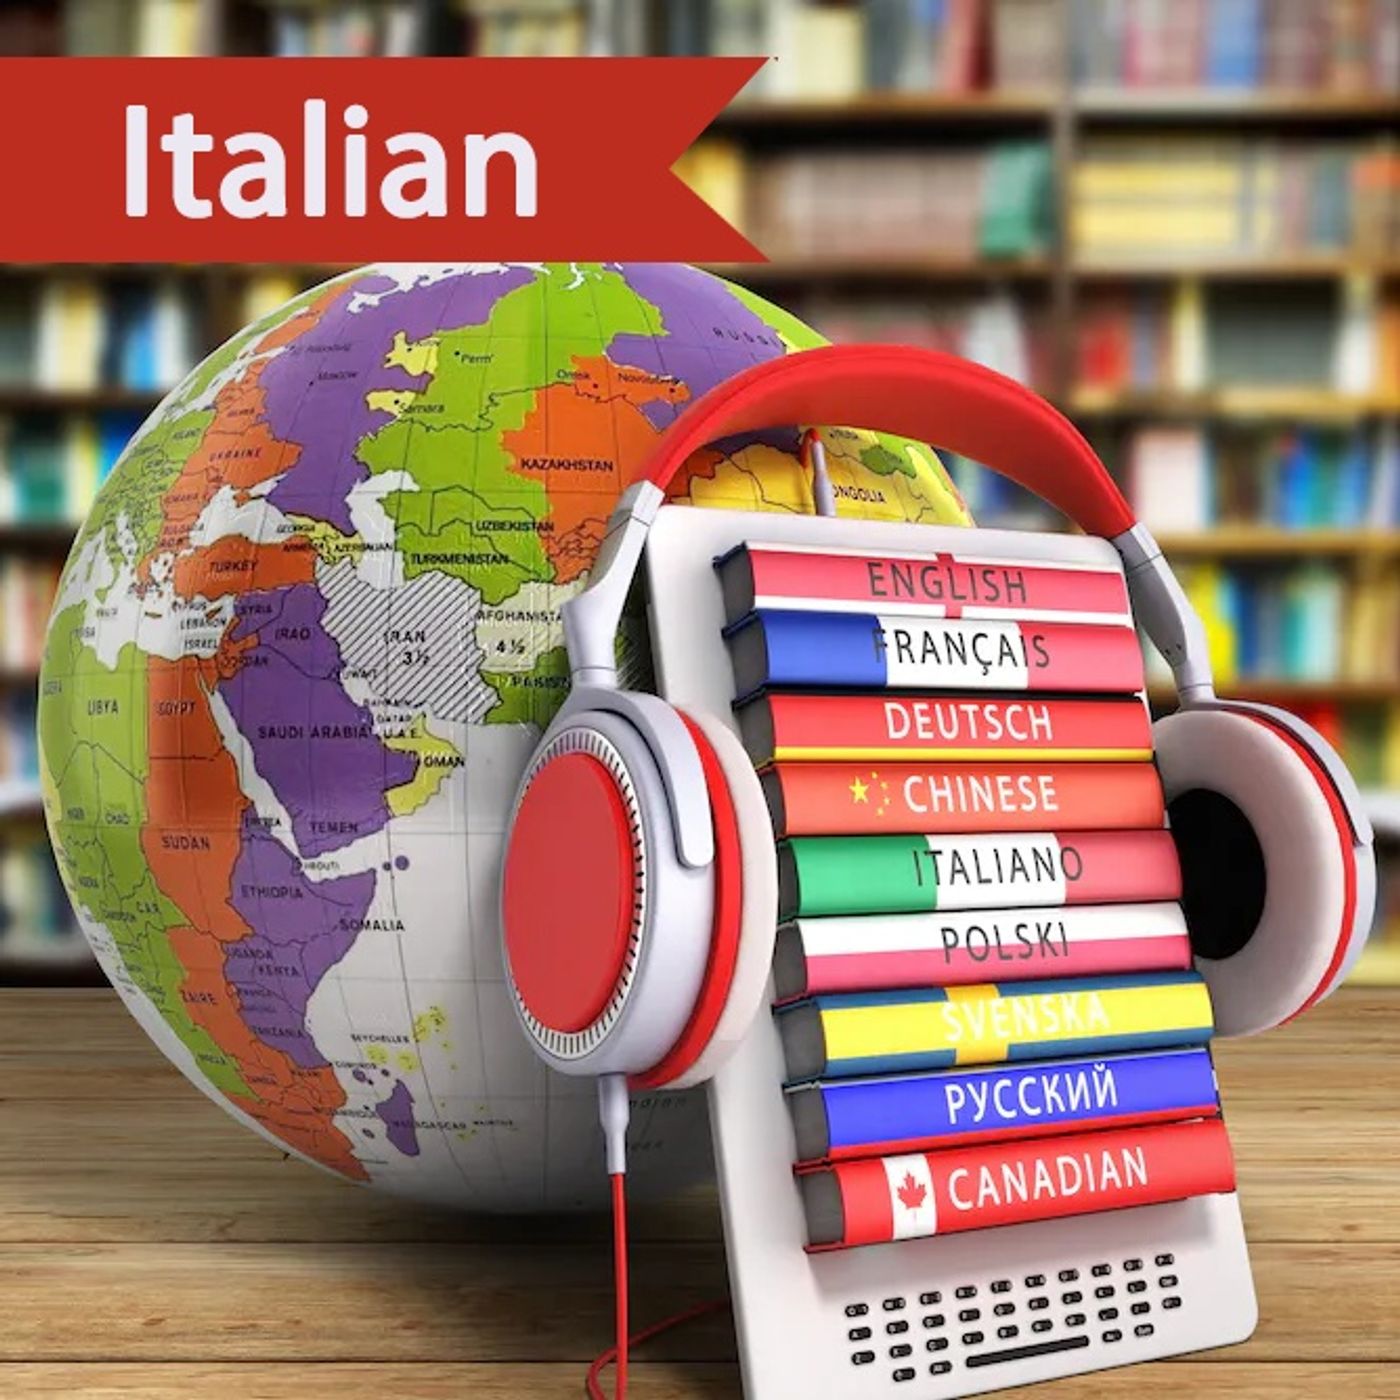 Italian I - Lesson 11